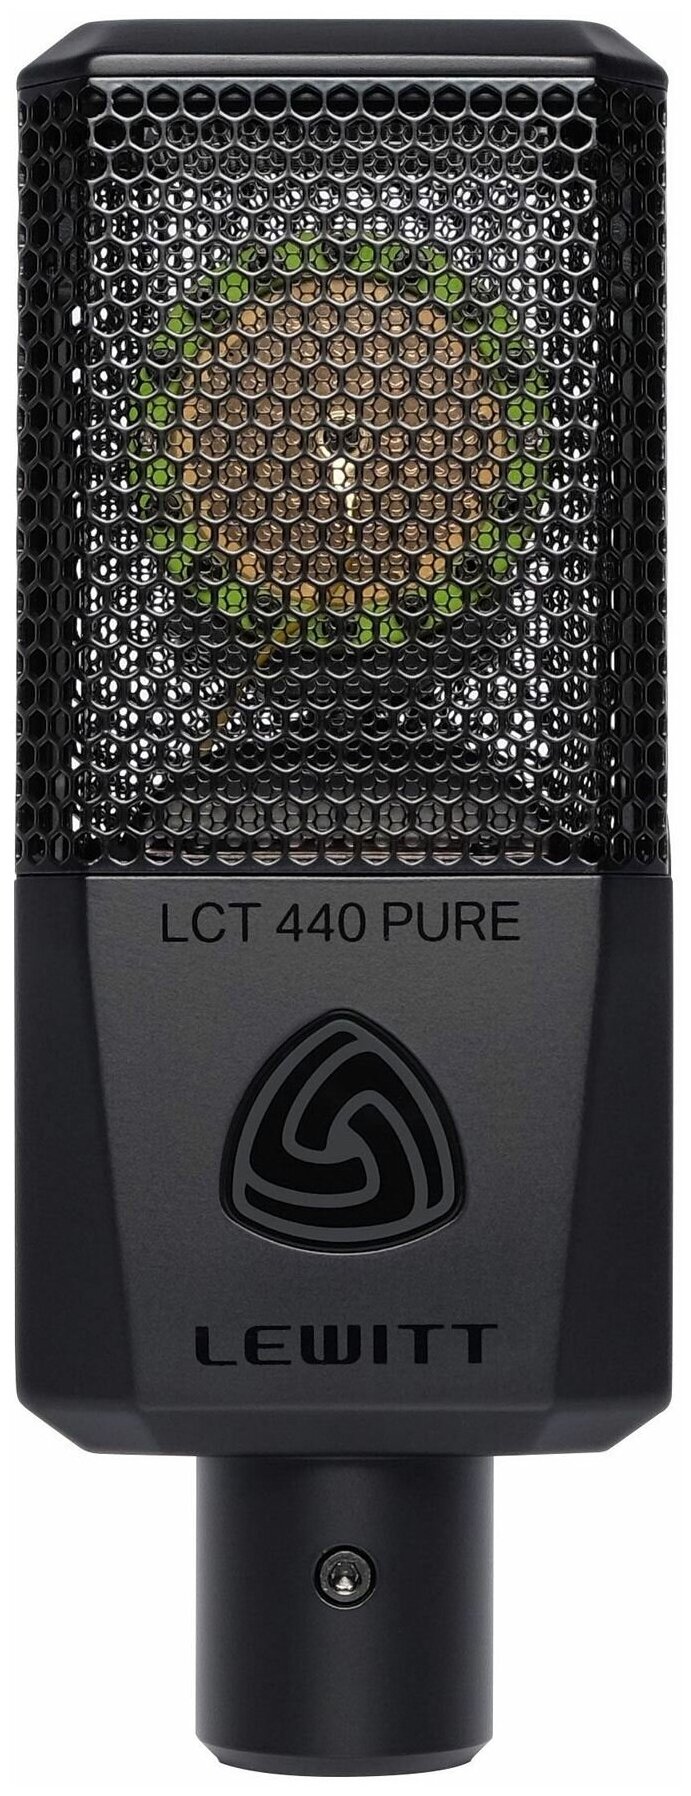 LEWITT LCT440 PURE - студийный кардиоидый микрофон с большой диафрагмой